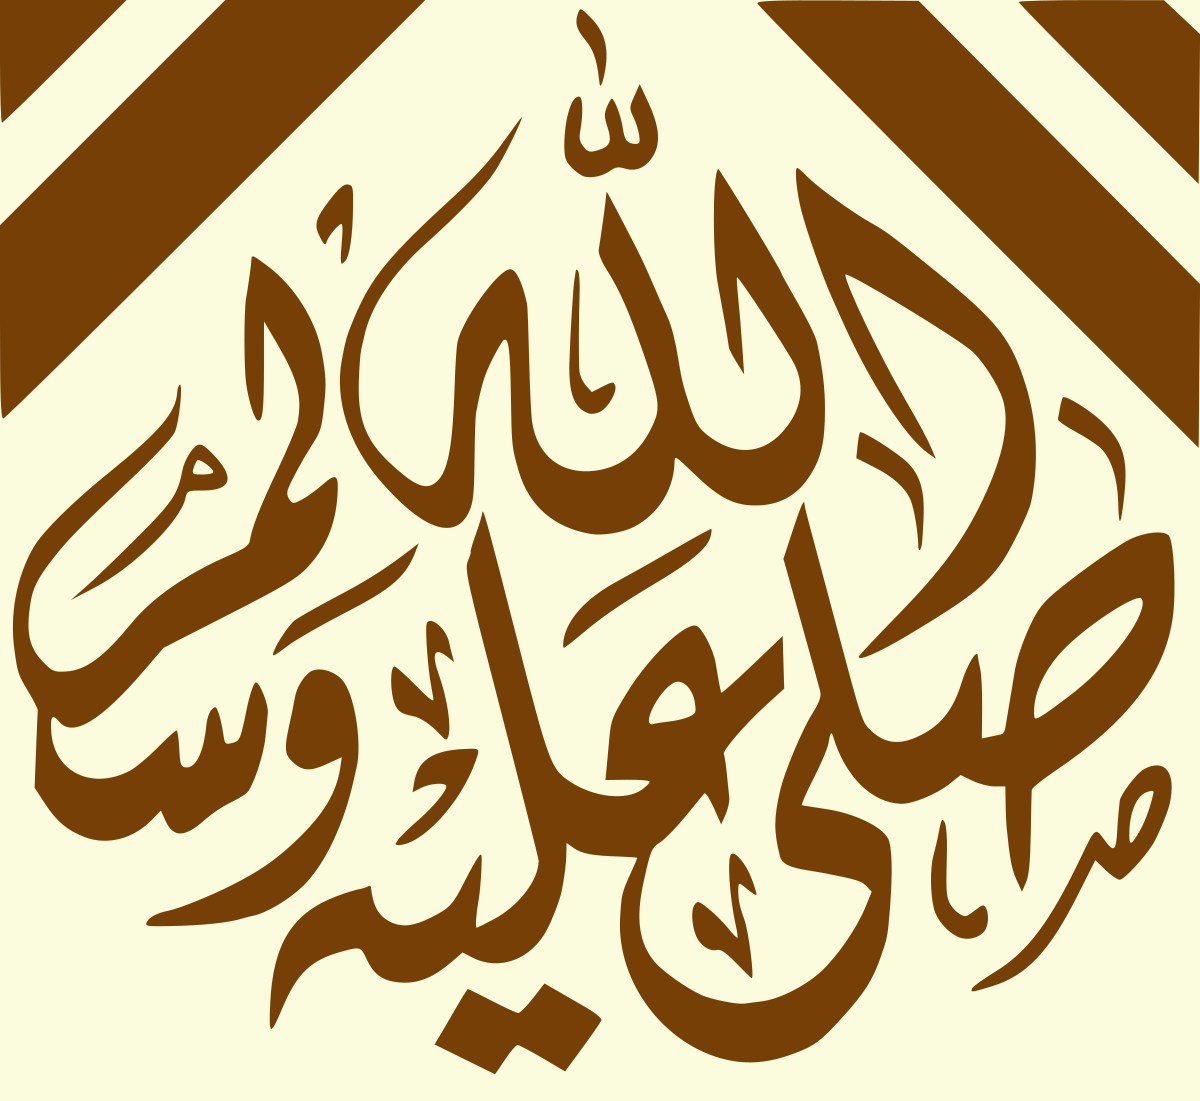 Muhammad saw arabic